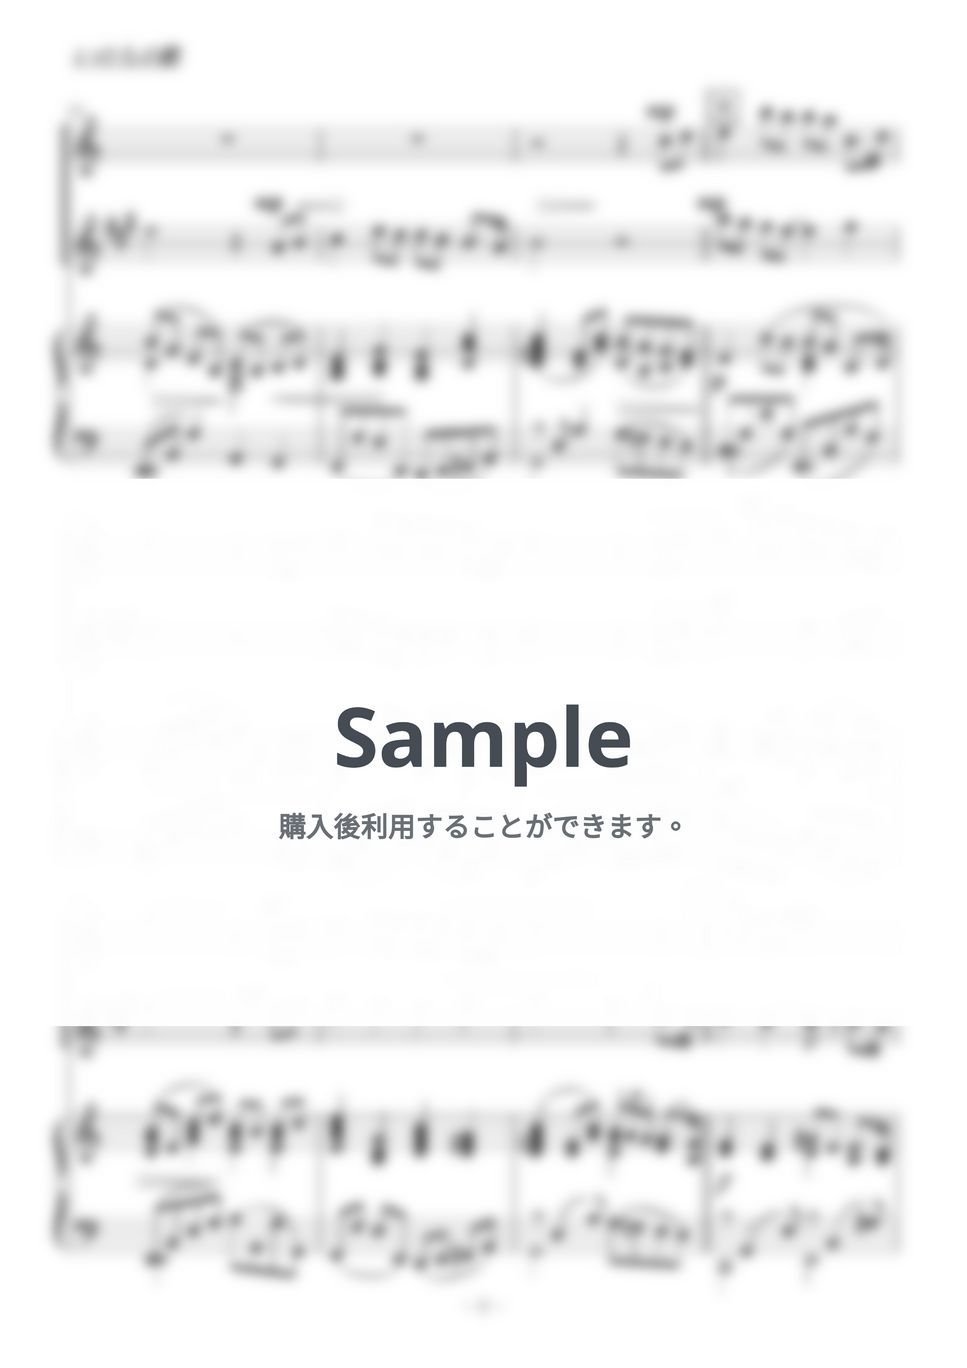 竹内まりや - いのちの歌 (フルート・アルトサックス二重奏) by kiminabe